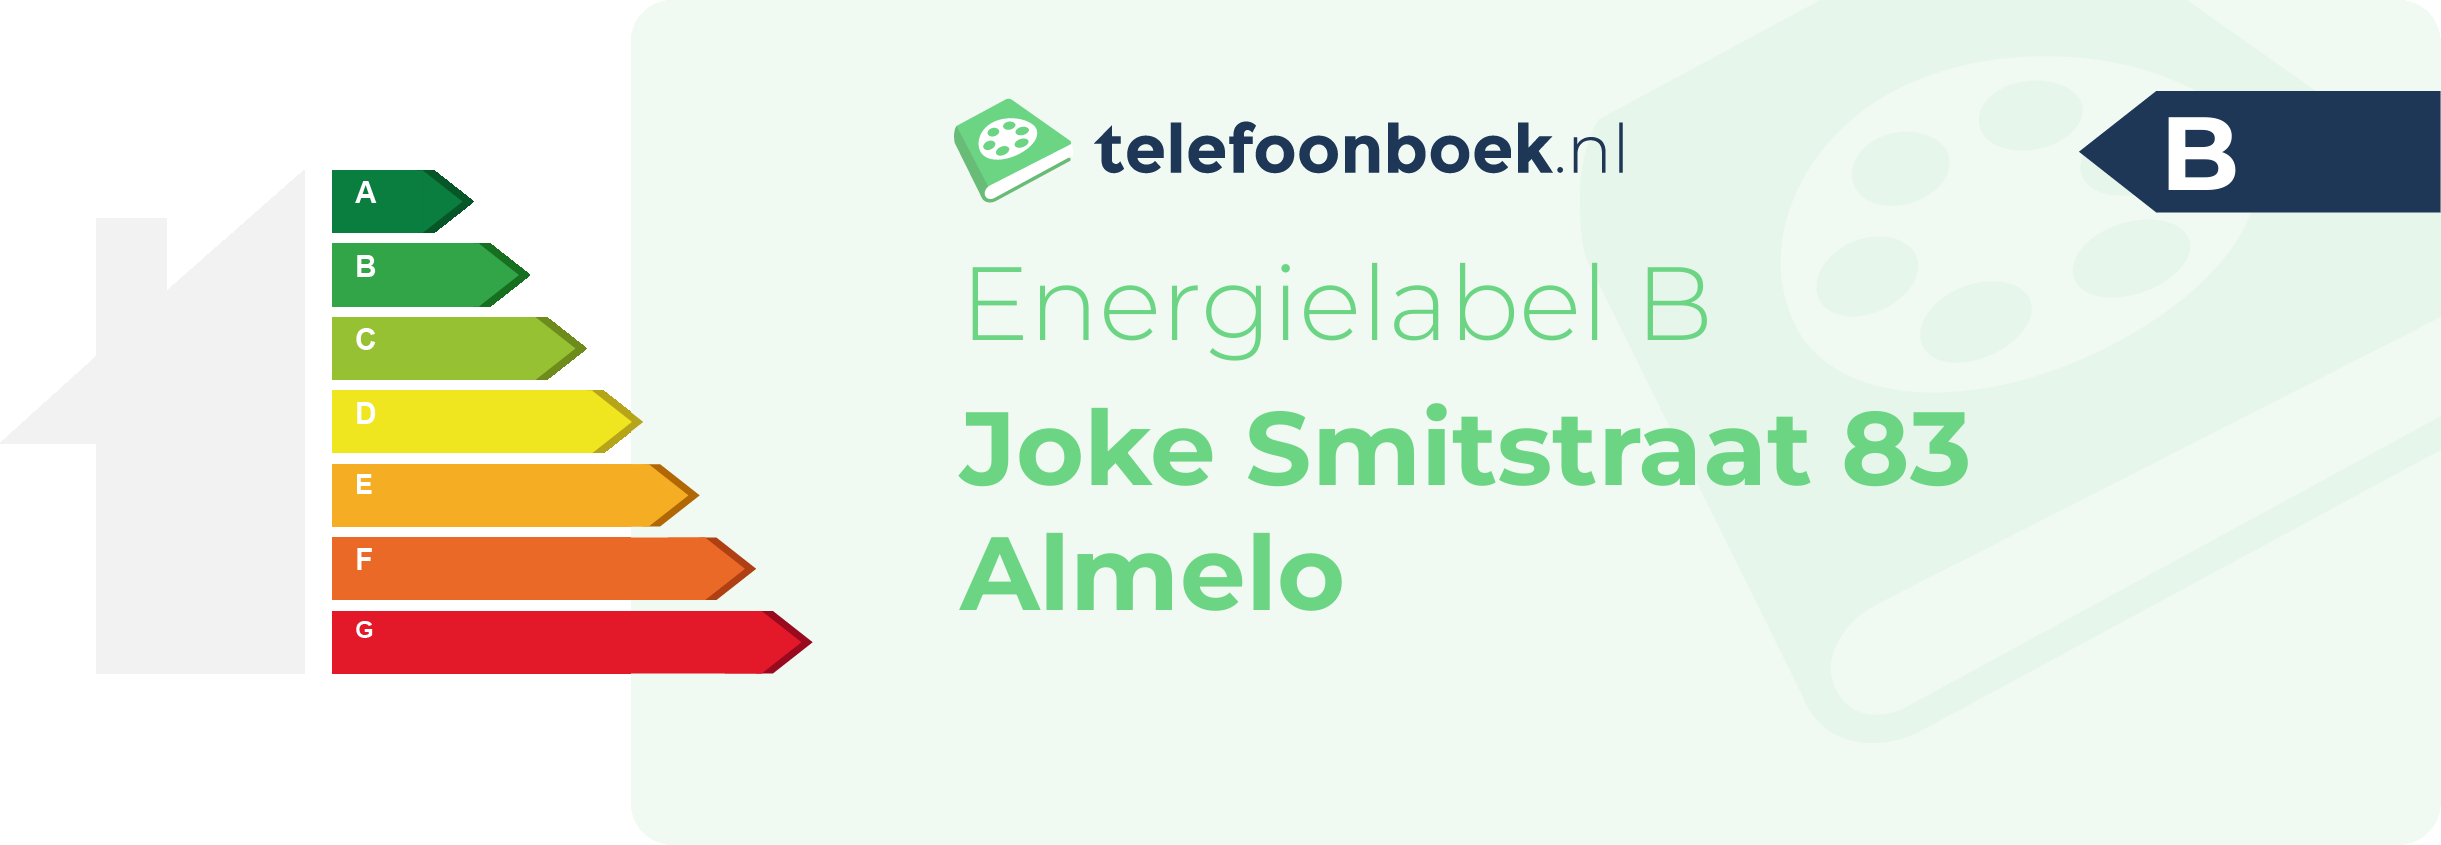 Energielabel Joke Smitstraat 83 Almelo